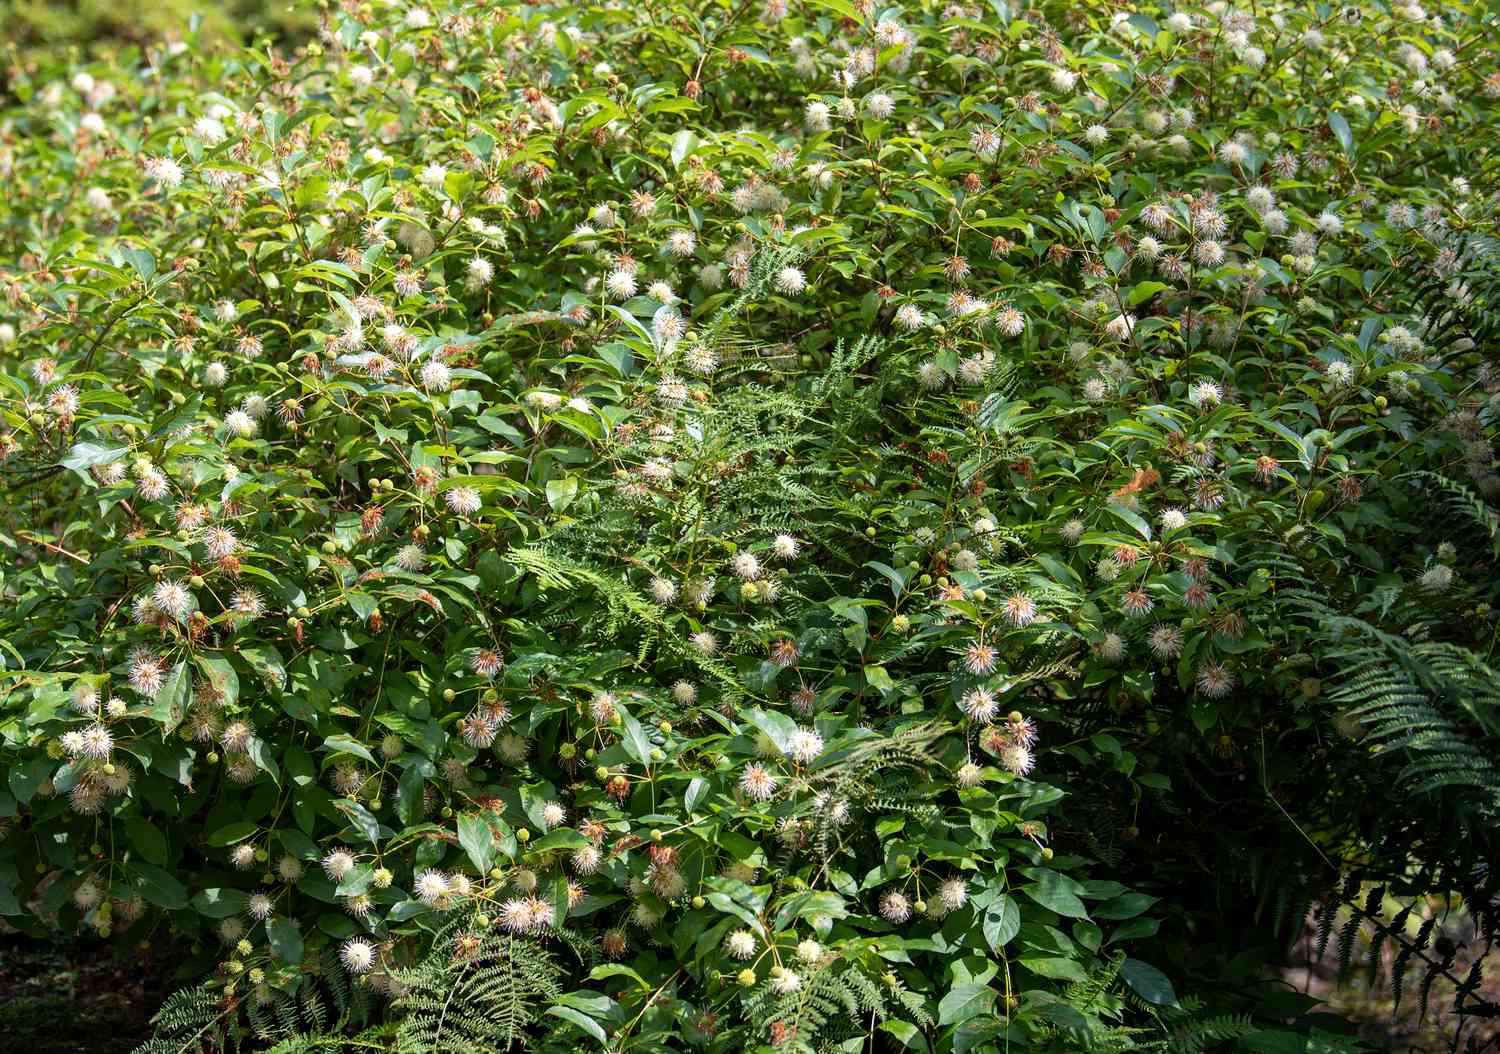 Knopfbuschstrauch mit kleinen weißen Nadelkissenblüten an den Zweigen